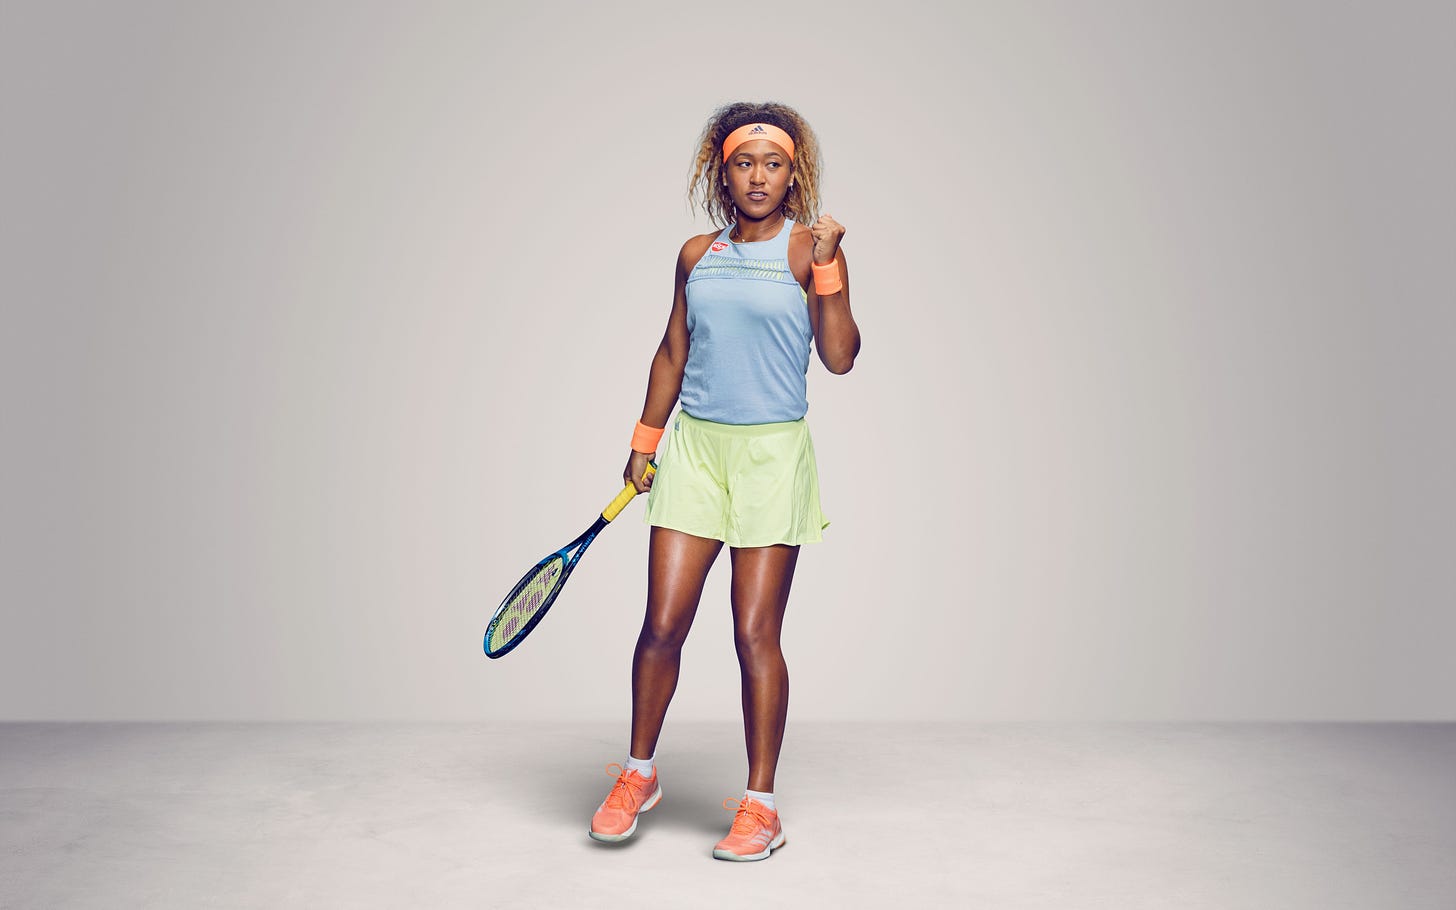 La tennista Naomi Osaka con la racchetta nella mano destra e la mano sinistra alzata a pugno. Indossa una maglietta azzurra e pantaloncini verdi. Ha lo sguardo rivolto fuori campo. Dietro di lei, uno sfondo grigio.